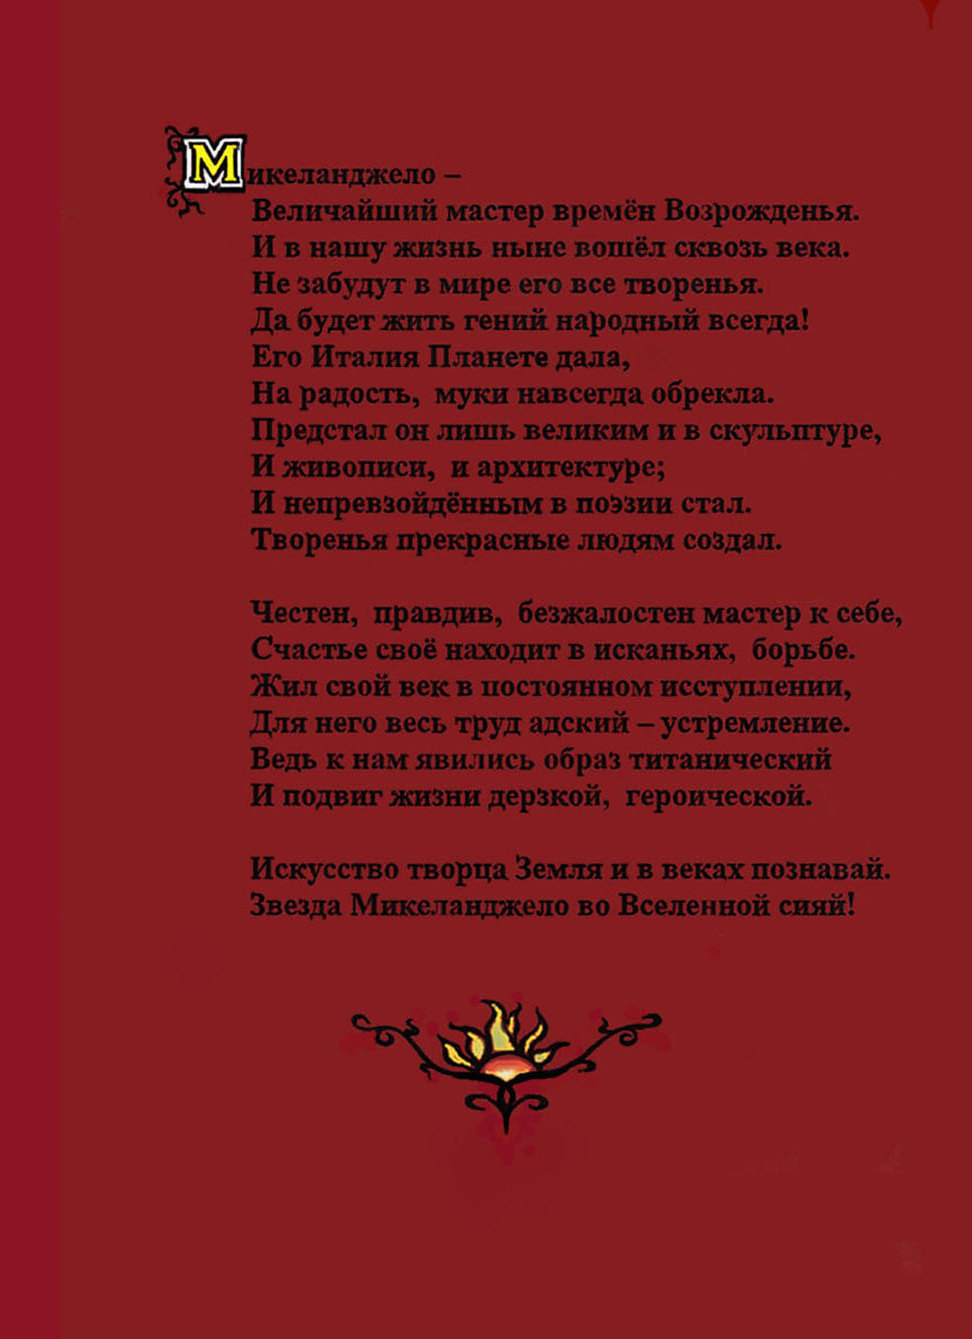 Микеланджело: героическая поэма / В. Ф. Козлов. — Ижевск, 2012